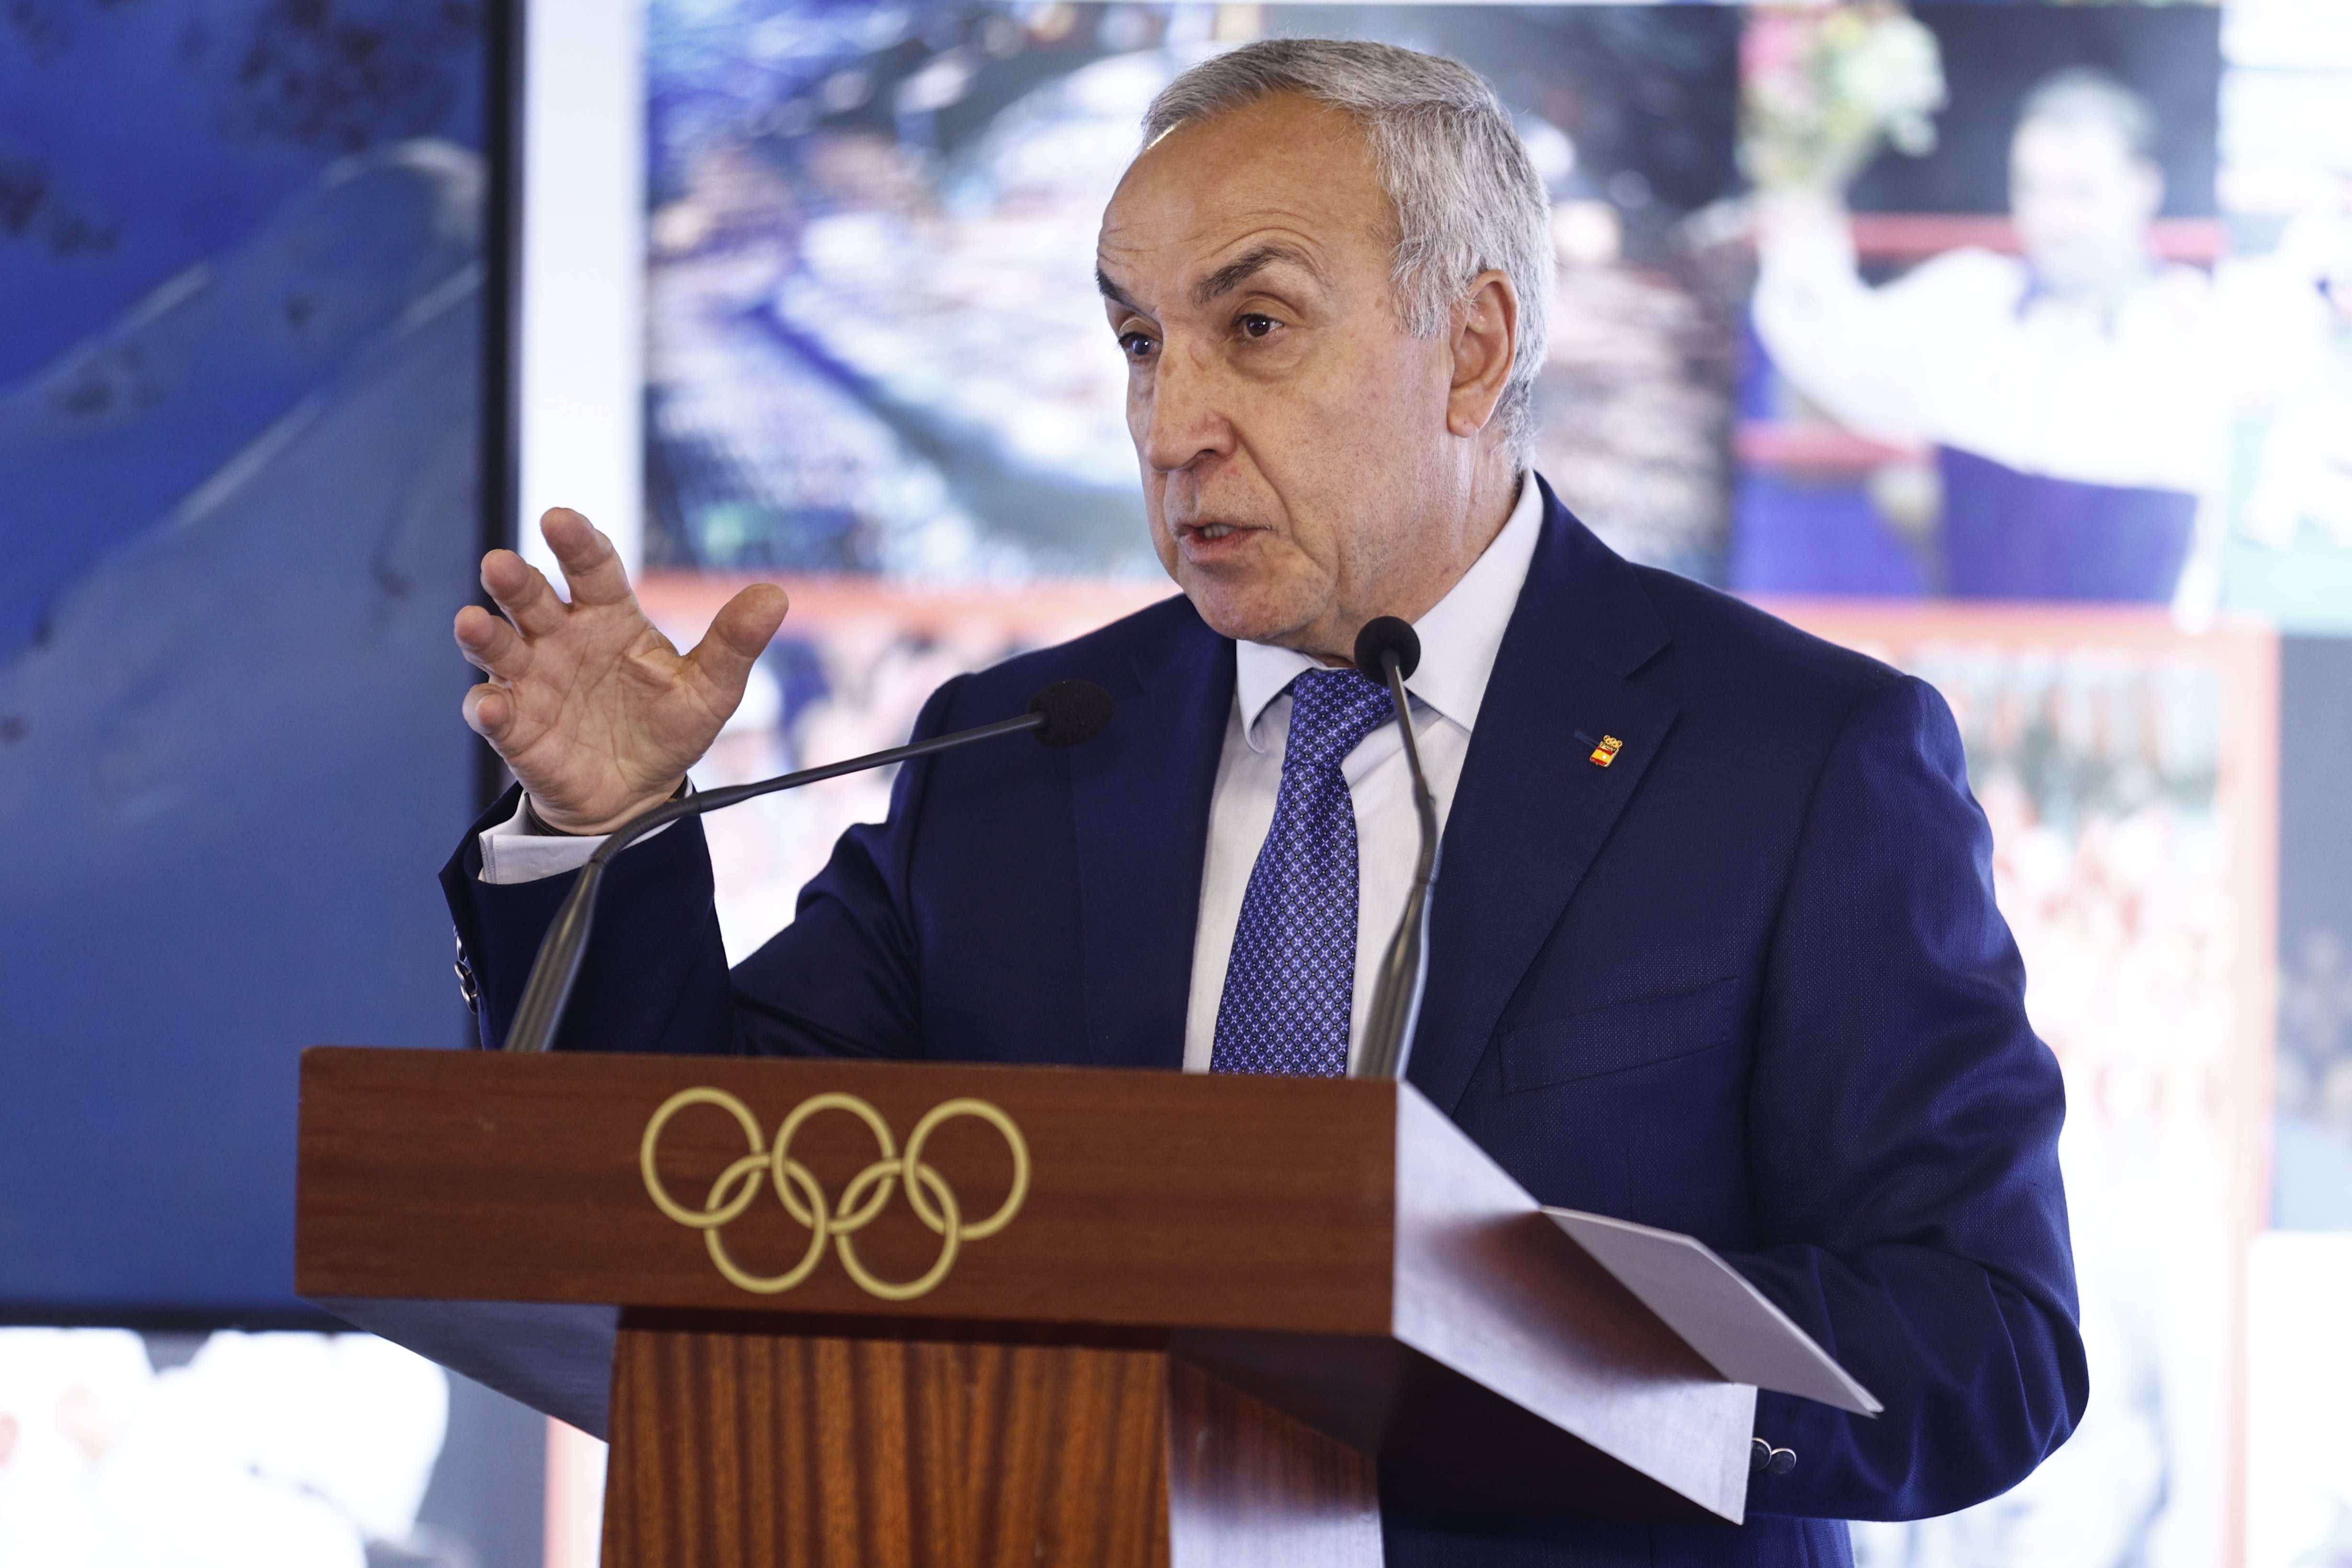 El COE cancela la candidatura de los Juegos de Invierno 2030 pero mira al 2034